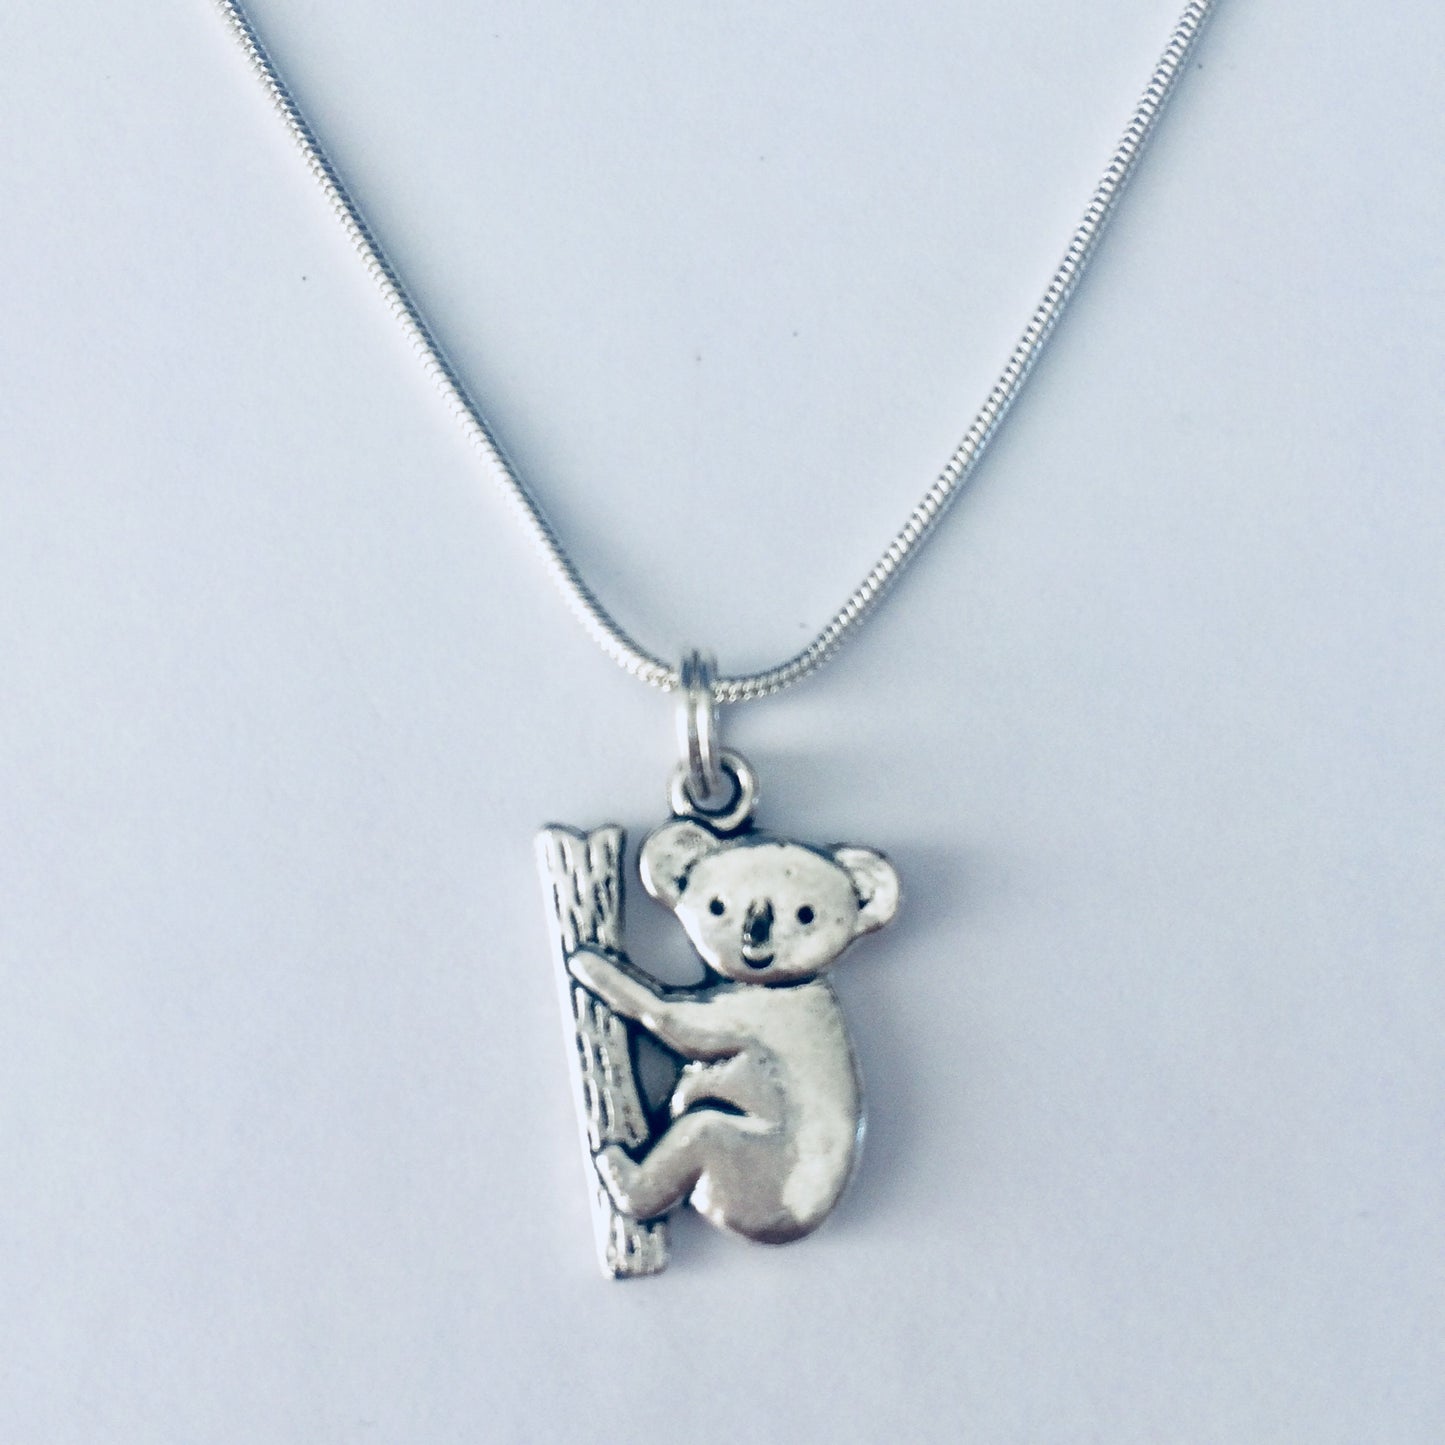 Koala Necklace, Koala Jewelry, Koala Gift Ideas, Koala Related Jewellery, Animal Jewellery, Animal Necklaces, Cute Nature Gift, Koala Lover.